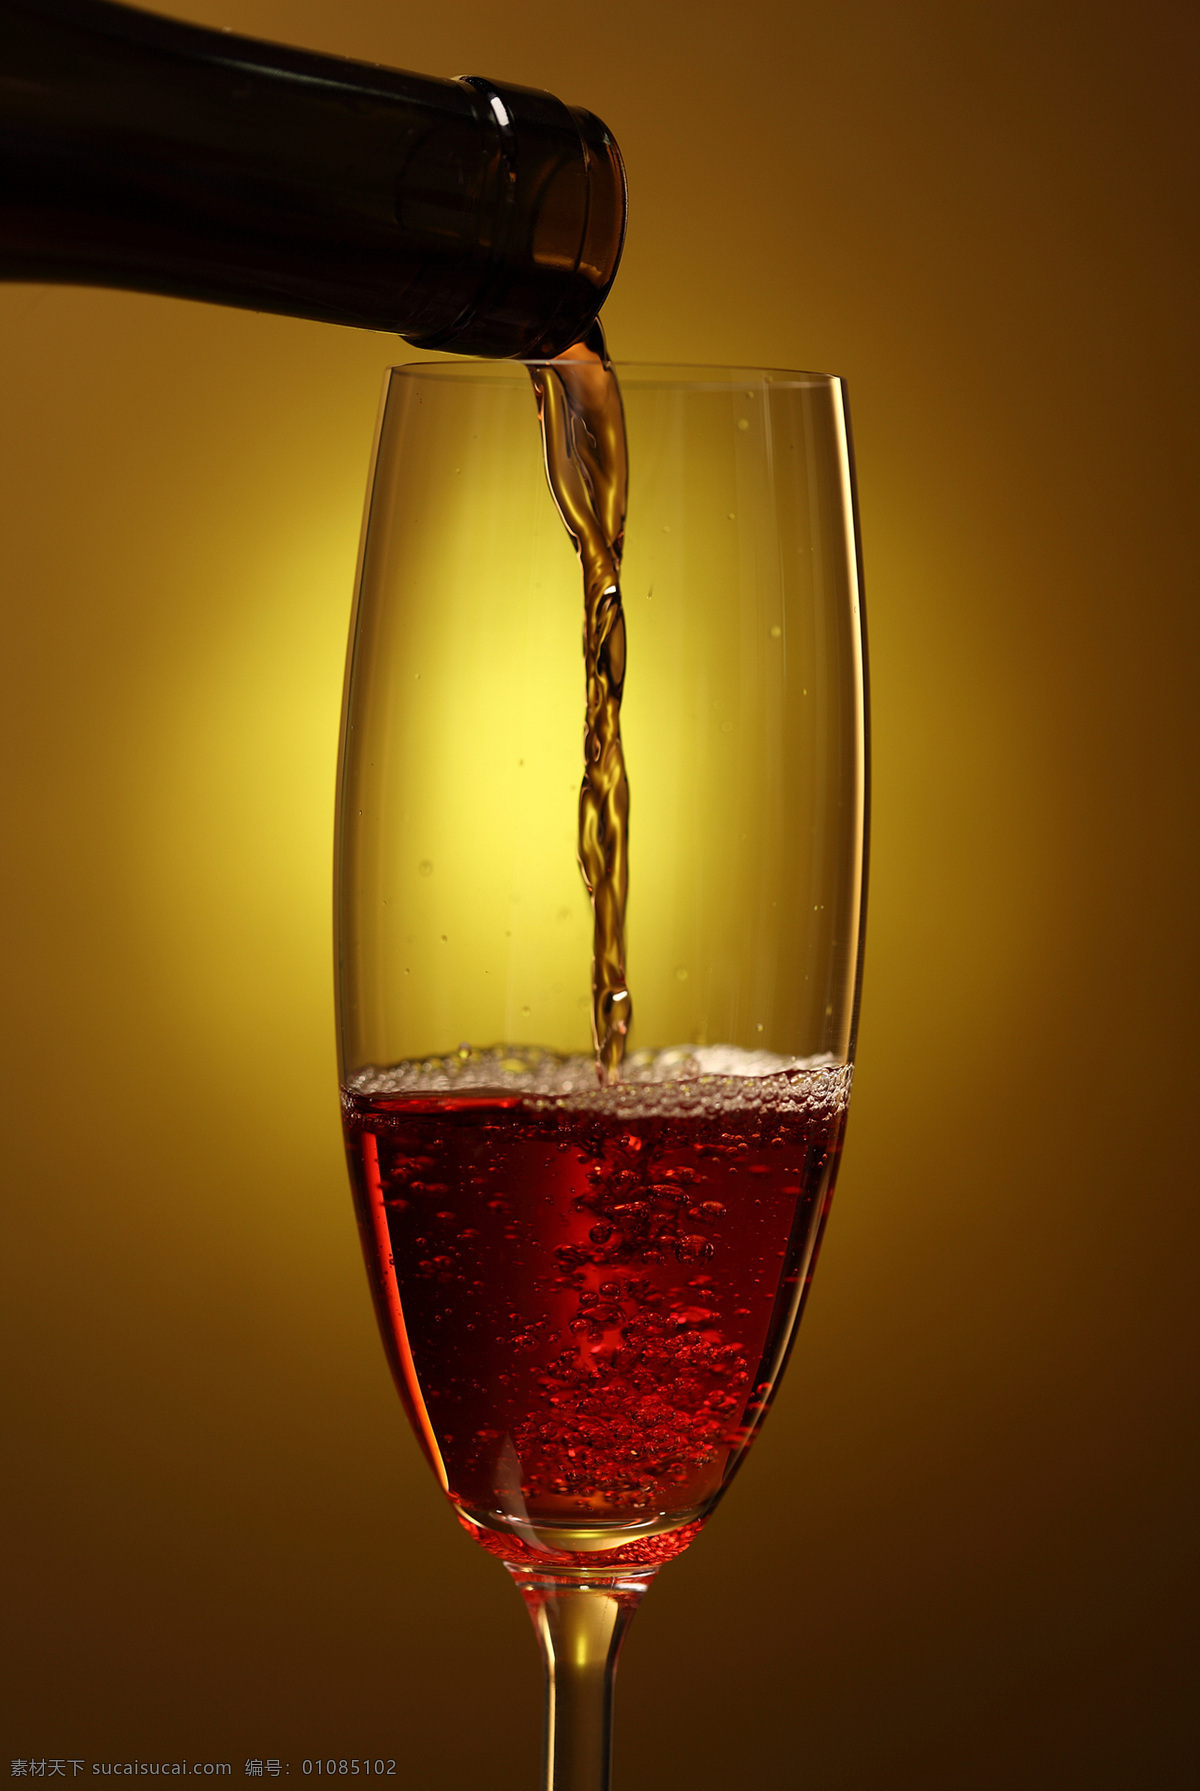 红色 葡萄酒 红酒 酒杯 酒液 休闲饮品 酒水饮料 餐饮美食 酒类图片